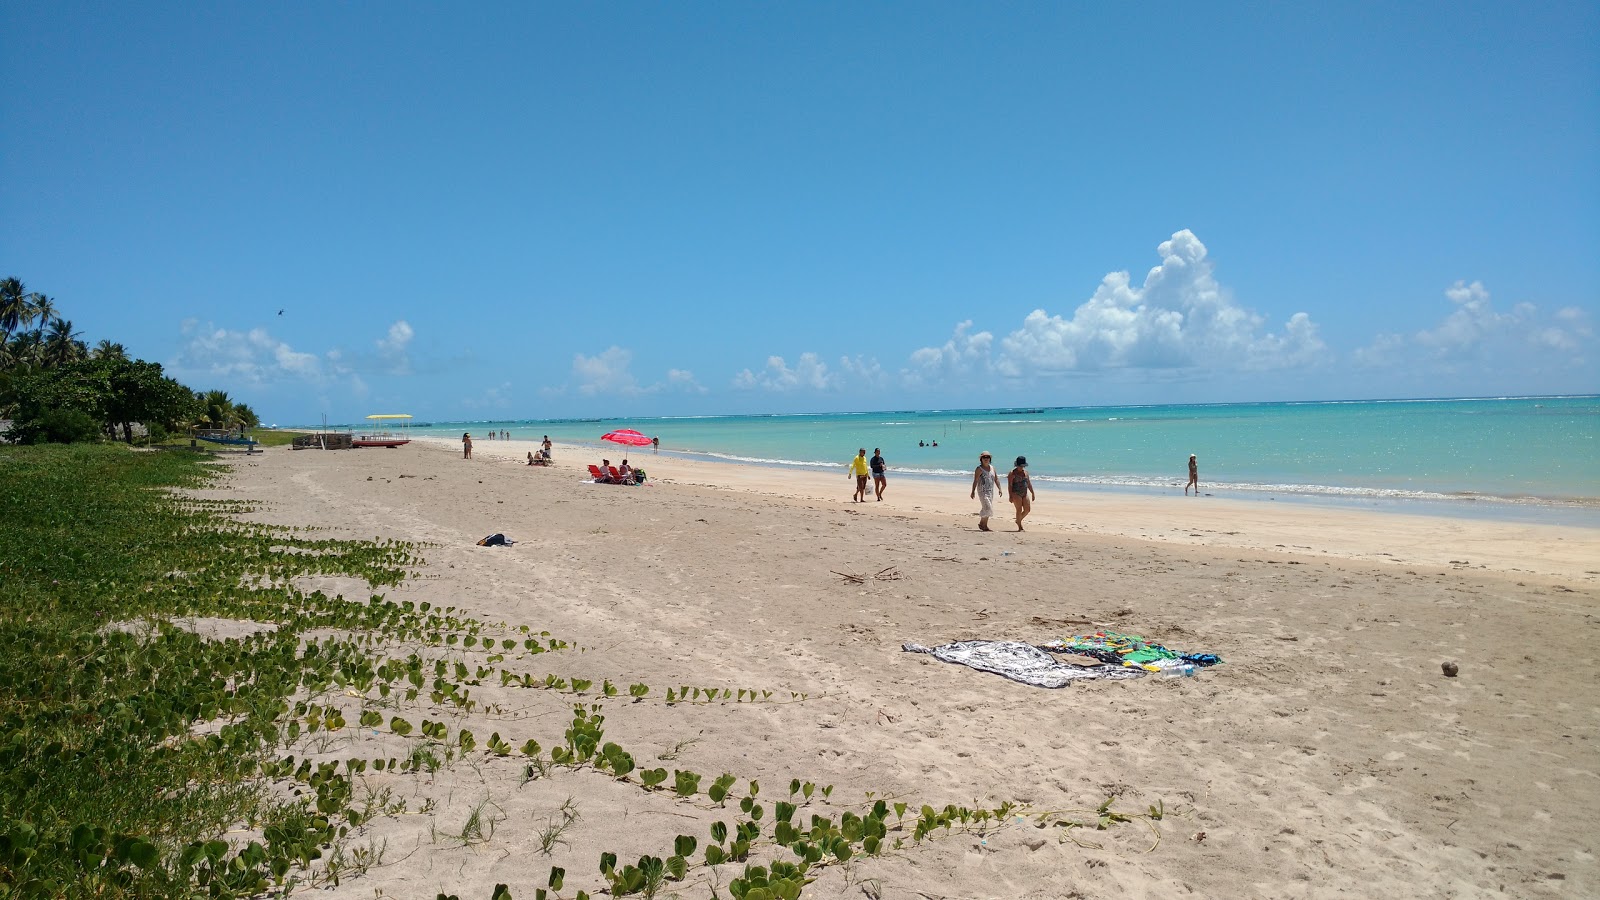 Fotografie cu Praia do Riacho cu o suprafață de nisip strălucitor